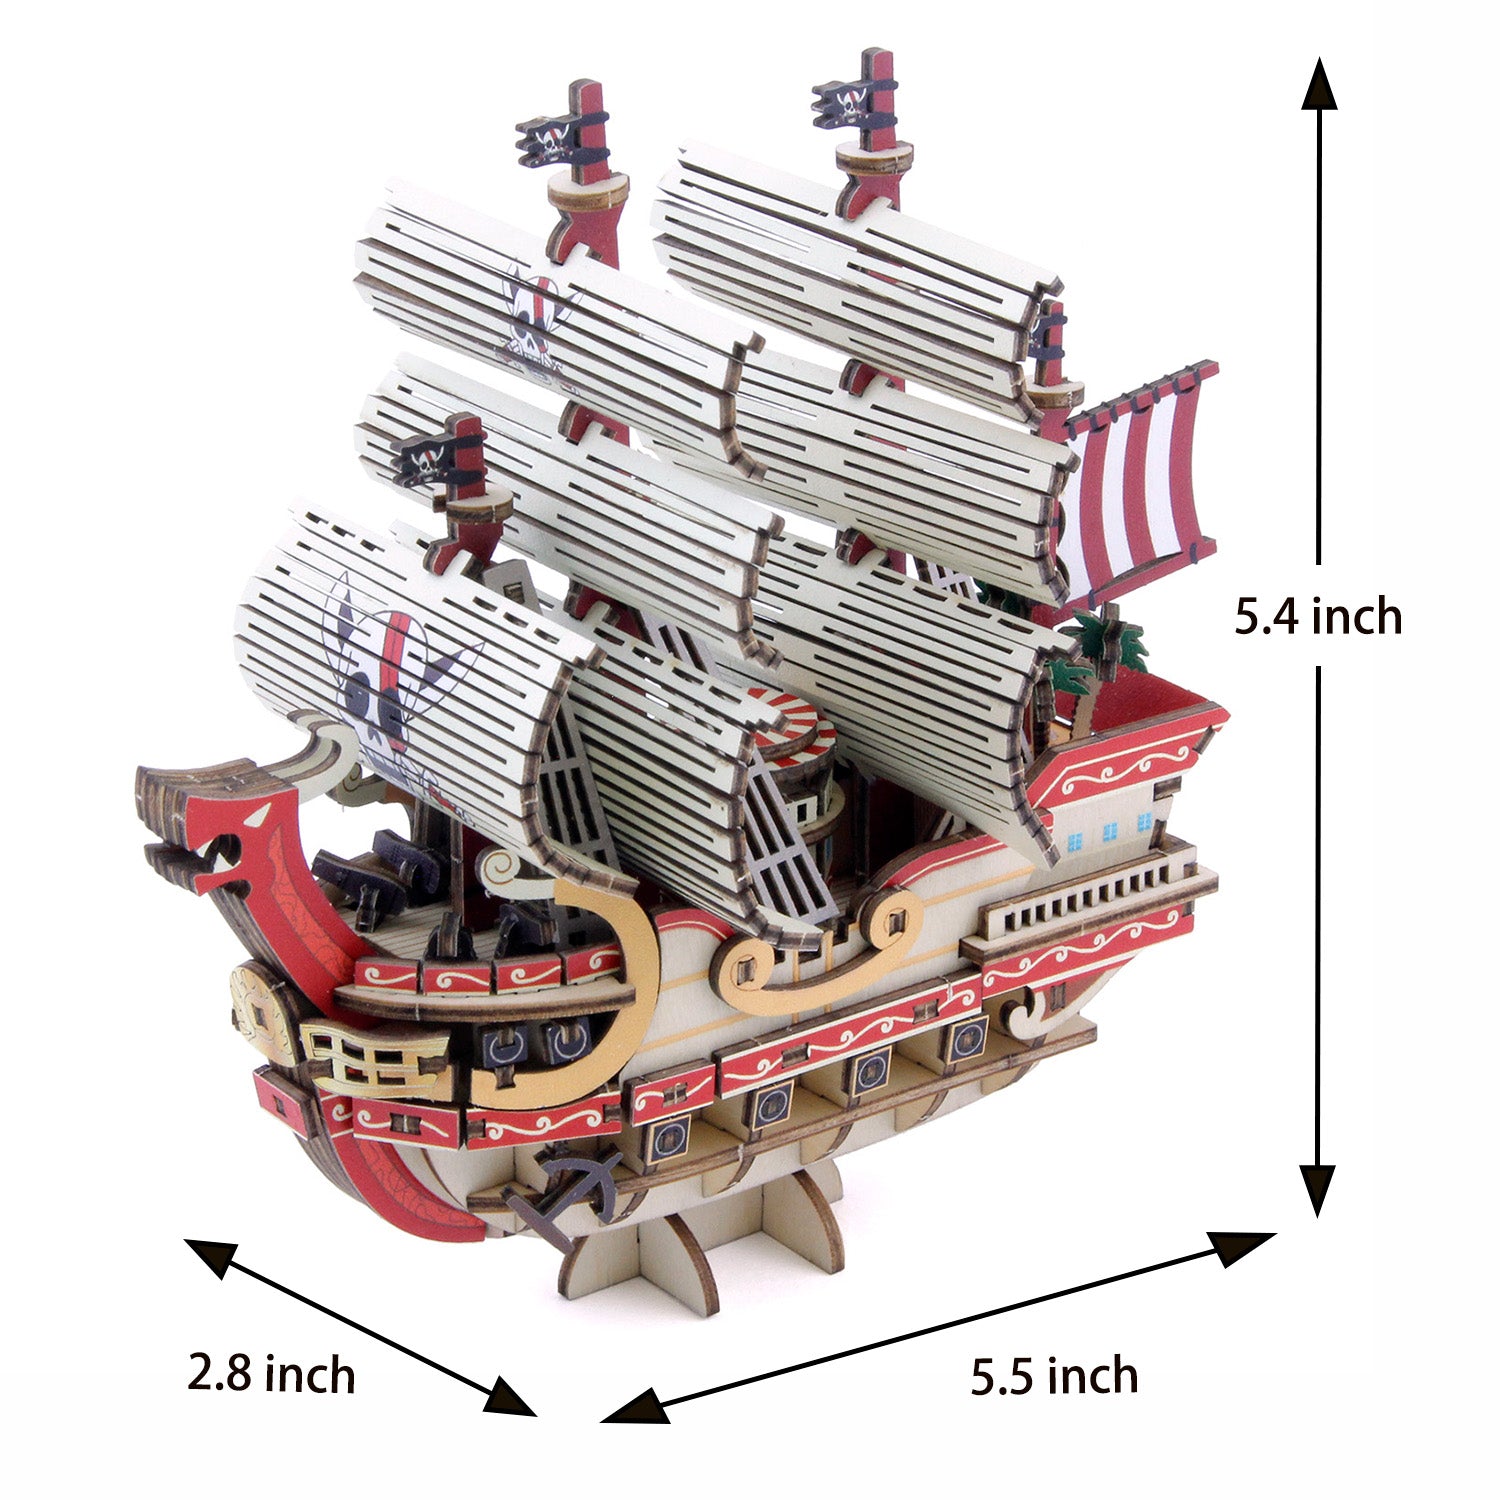 Ki-gu-mi One Piece Wooden Ship Model